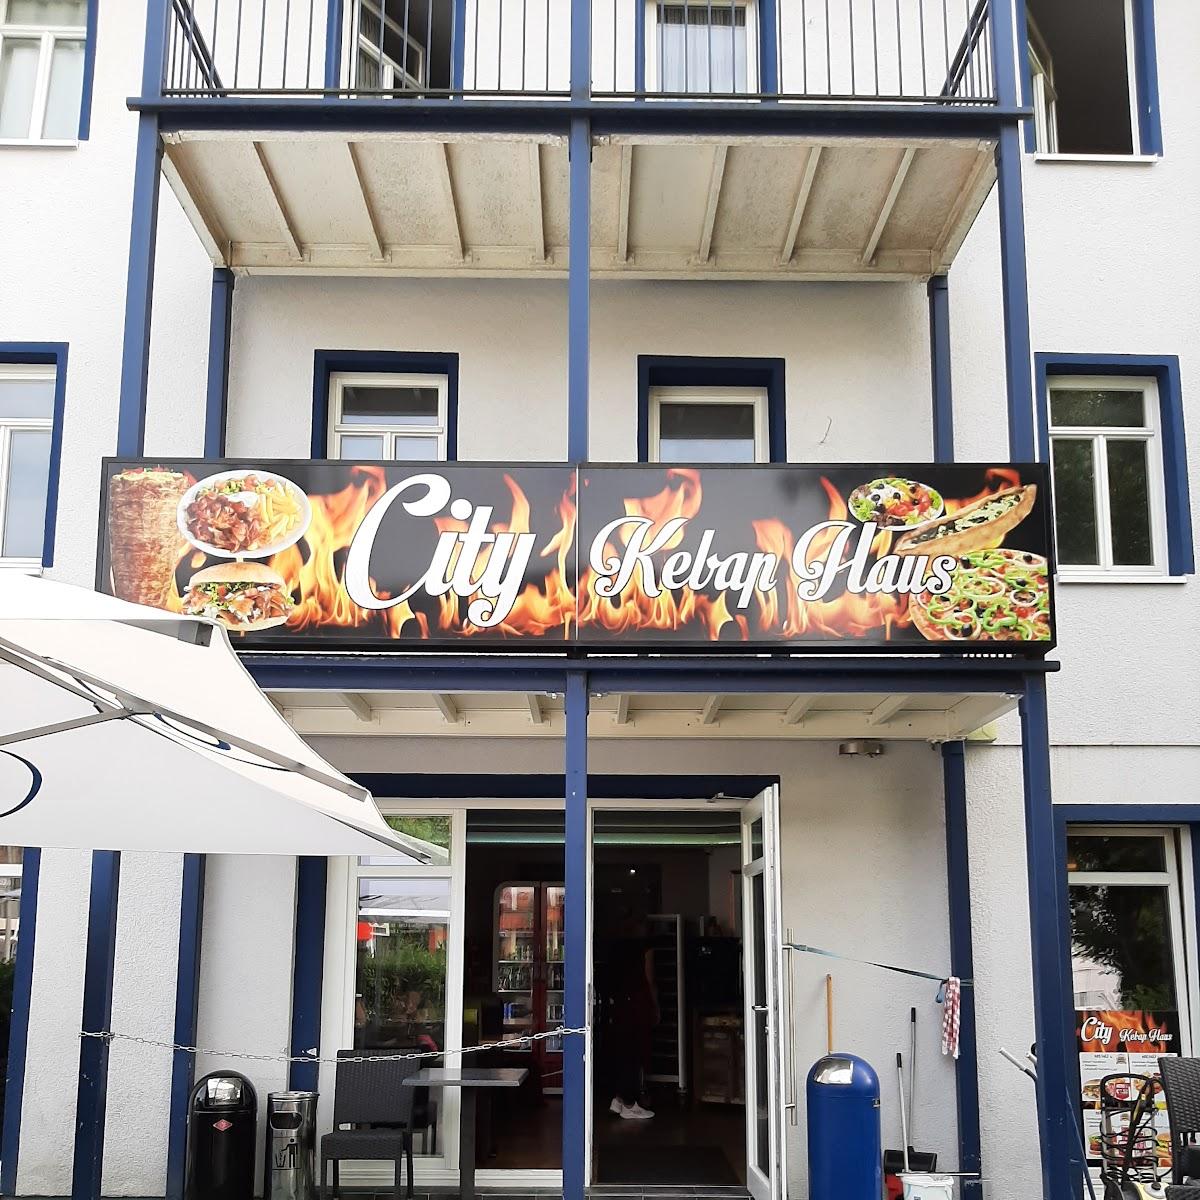 Restaurant "City Kebap Haus" in Königstein im Taunus